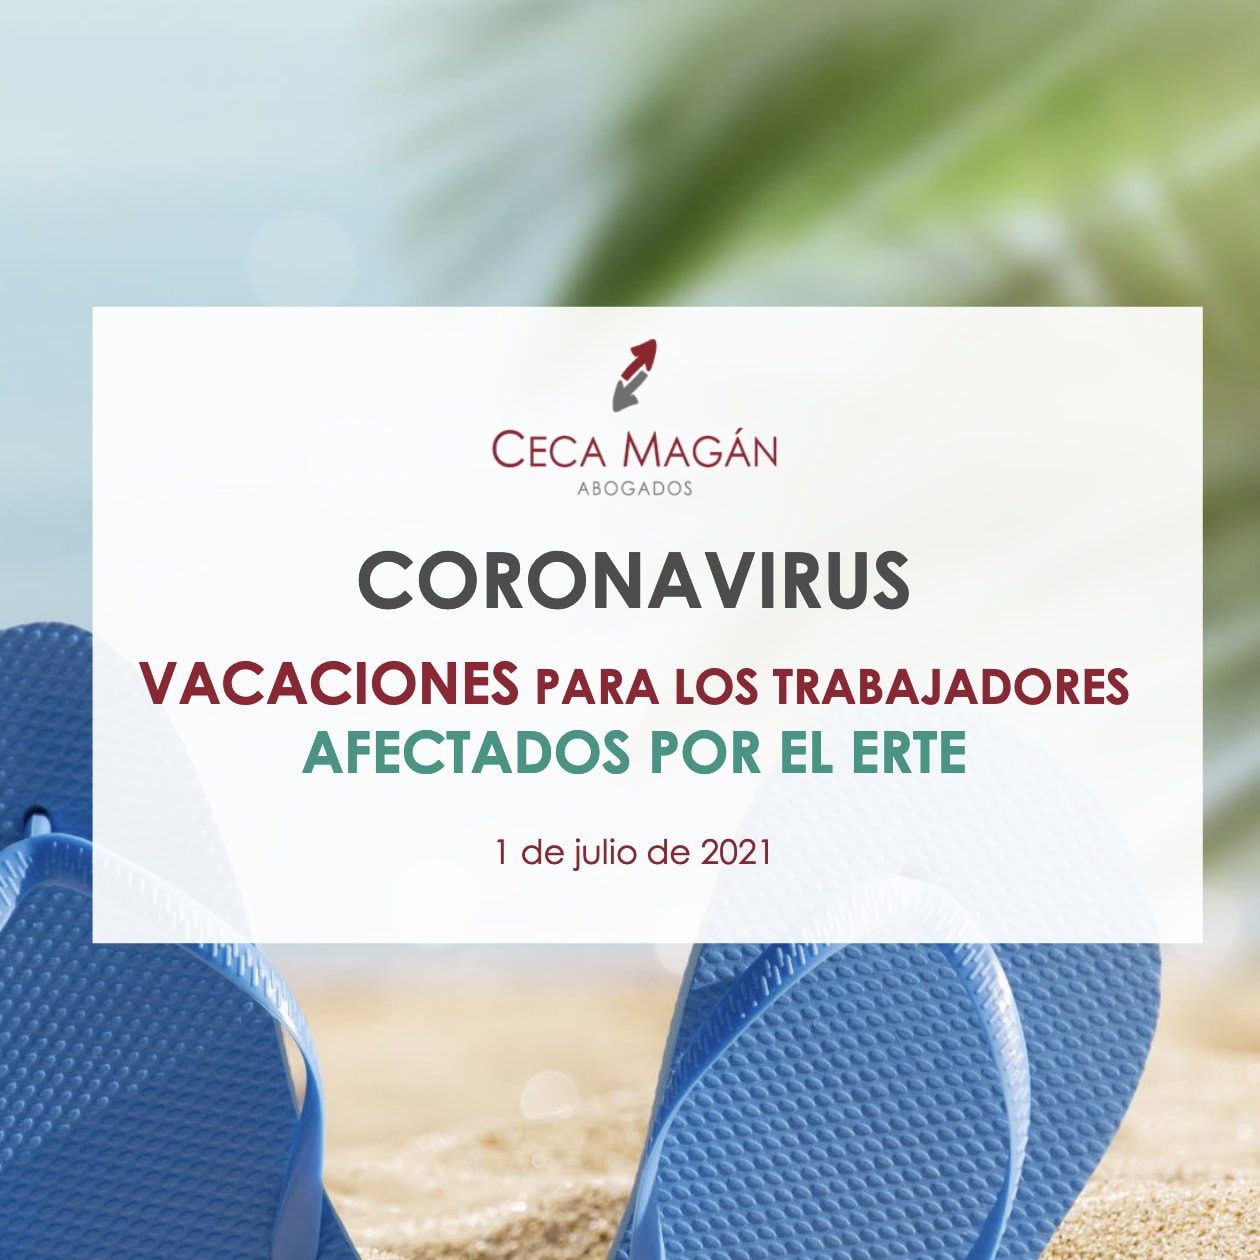 Coronavirus: Vacaciones para los trabajadores afectados por el ERTE